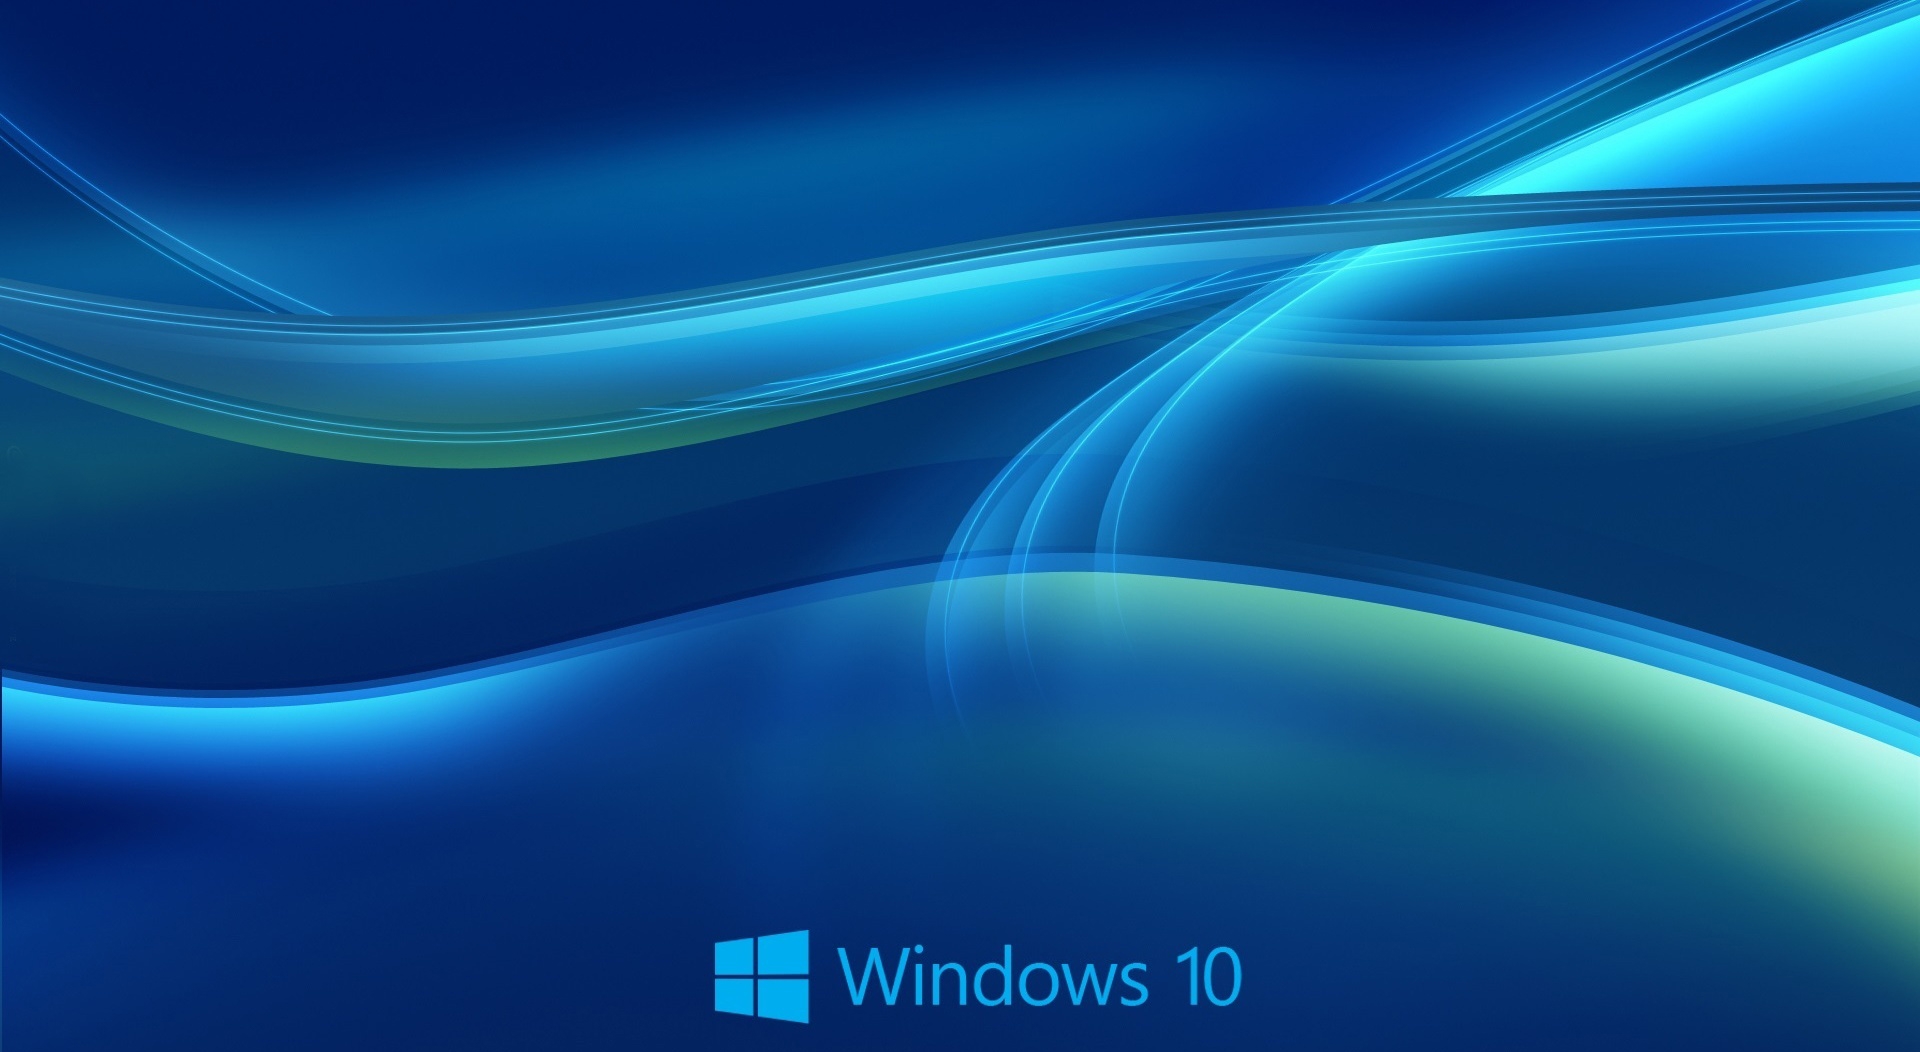 高清晰windows 10炫彩蓝色背景壁纸 欧莱凯设计网 08php Com